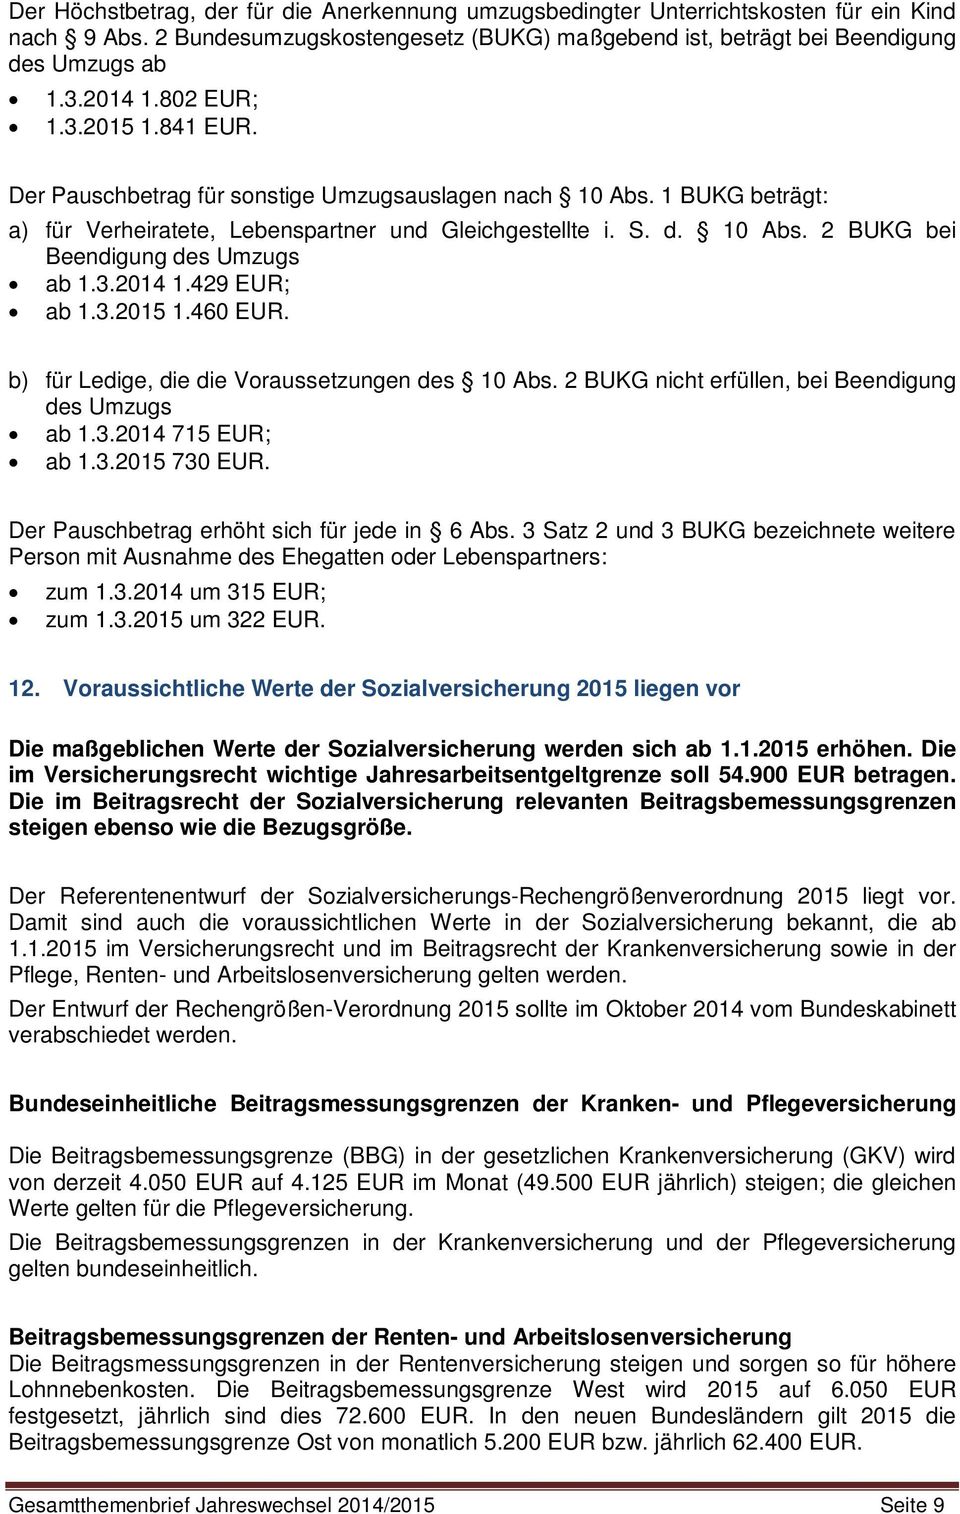 3.2014 1.429 EUR; ab 1.3.2015 1.460 EUR. b) für Ledige, die die Voraussetzungen des 10 Abs. 2 BUKG nicht erfüllen, bei Beendigung des Umzugs ab 1.3.2014 715 EUR; ab 1.3.2015 730 EUR.